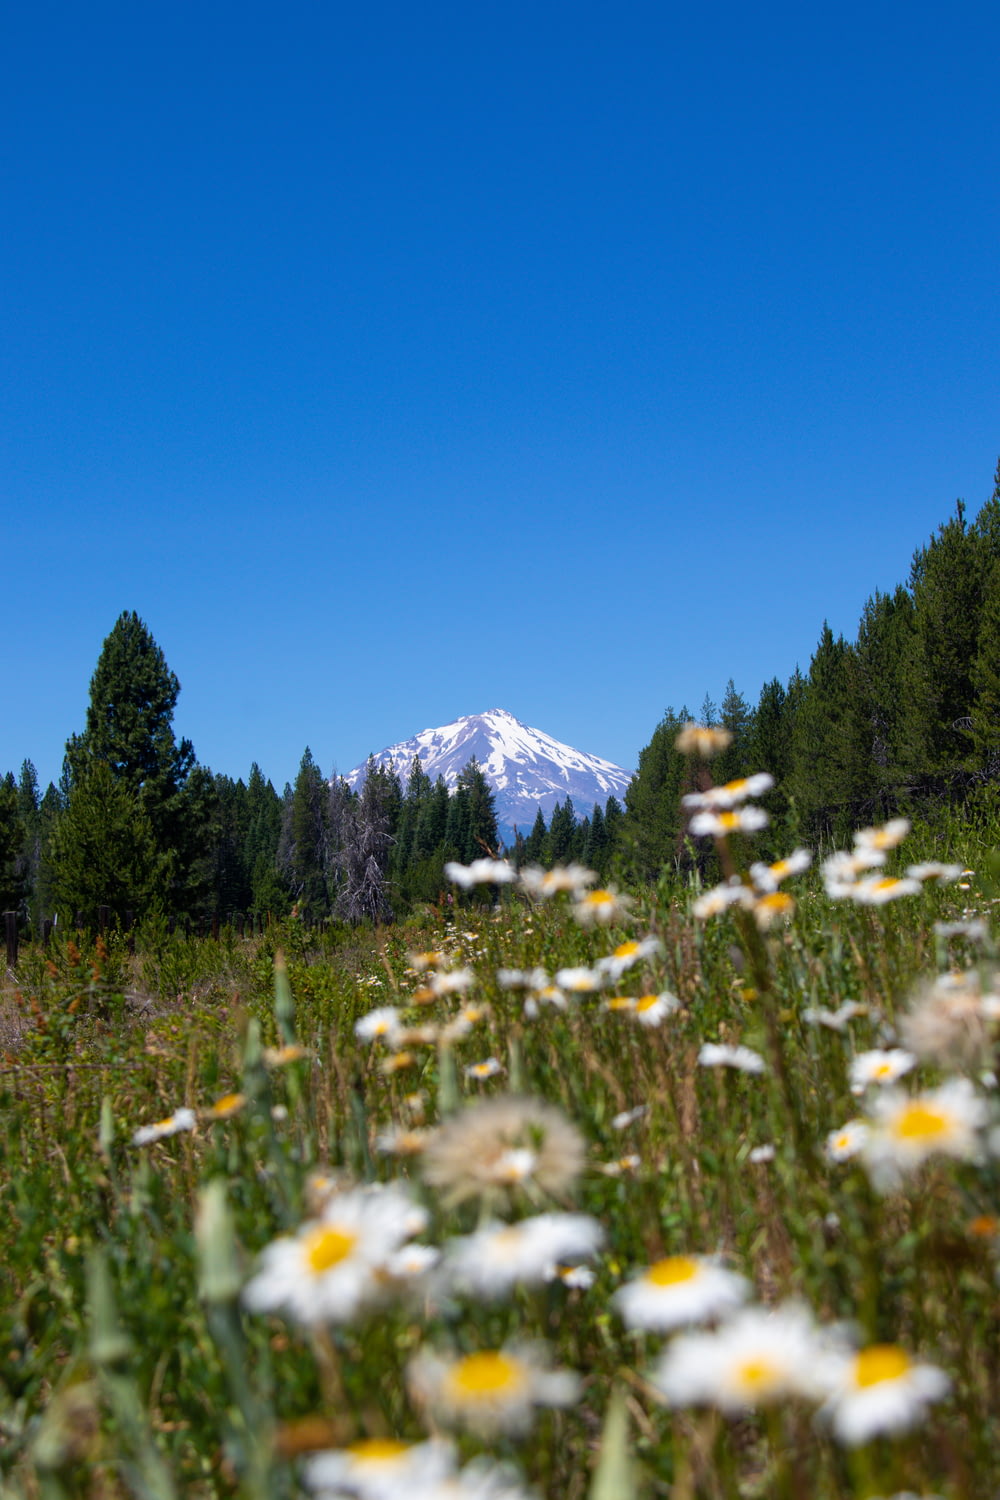 fleurs blanches sur un champ d’herbe verte près d’une montagne enneigée pendant la journée